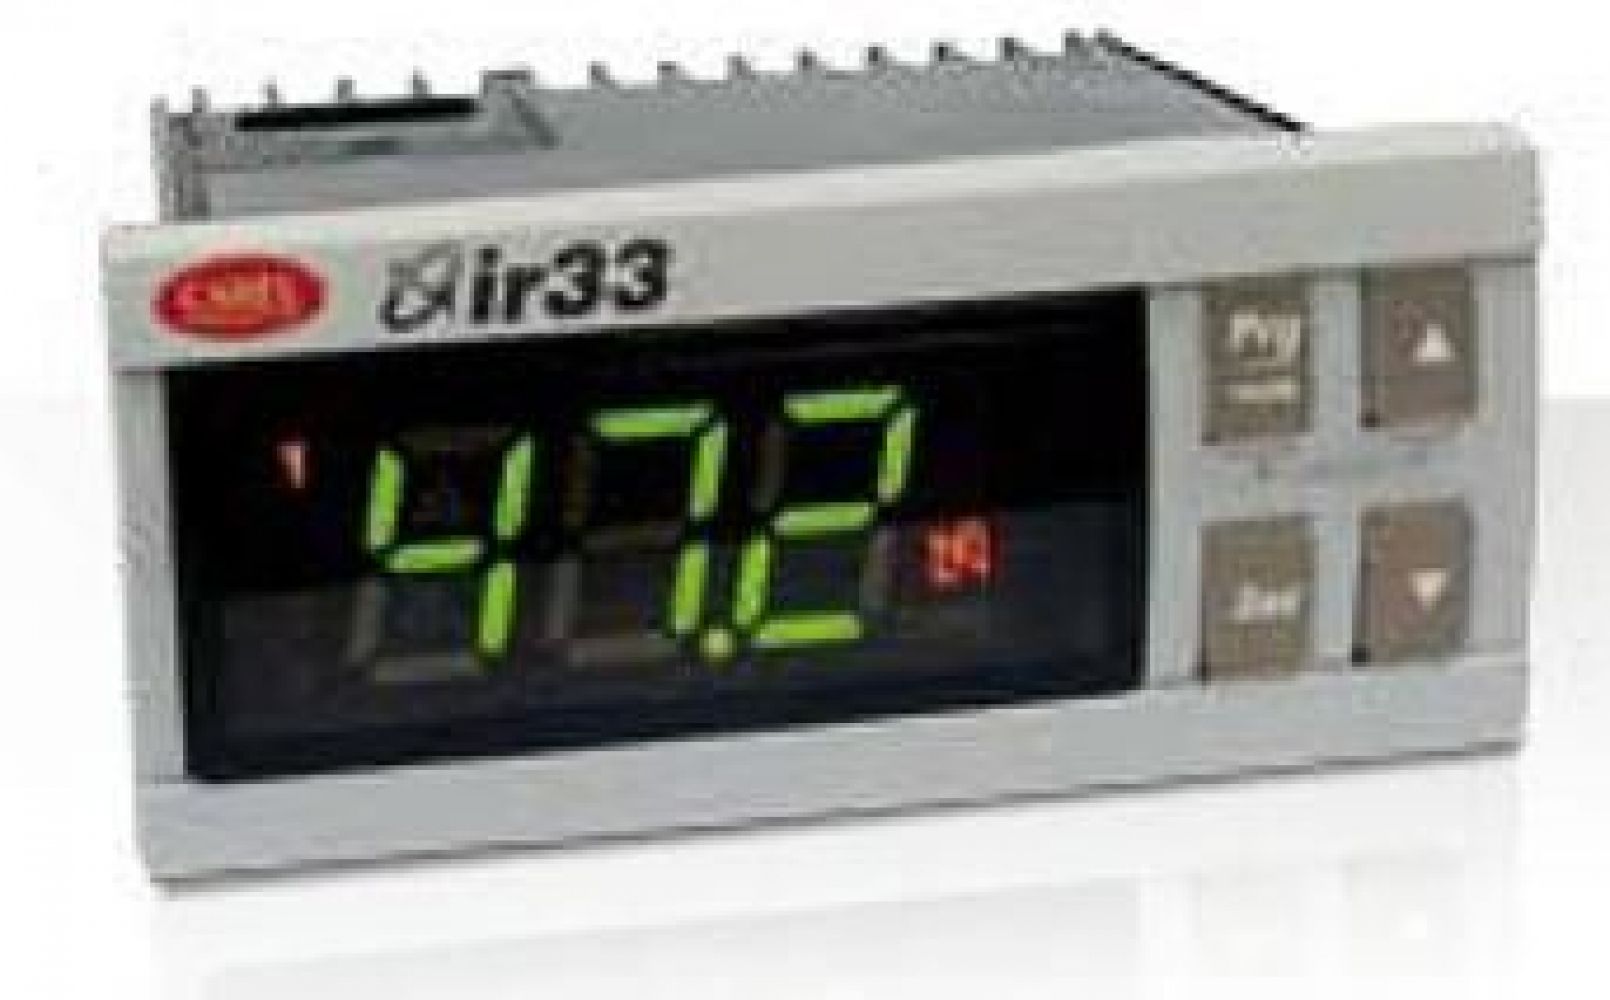 IR33D7HB20 Параметрический контроллер ir33, монтаж в панель, 2NTC/PTC/PT1000, 1 твердотельное реле, звуковой сигнал, ИК-приемник, RTC, 115-230VAC